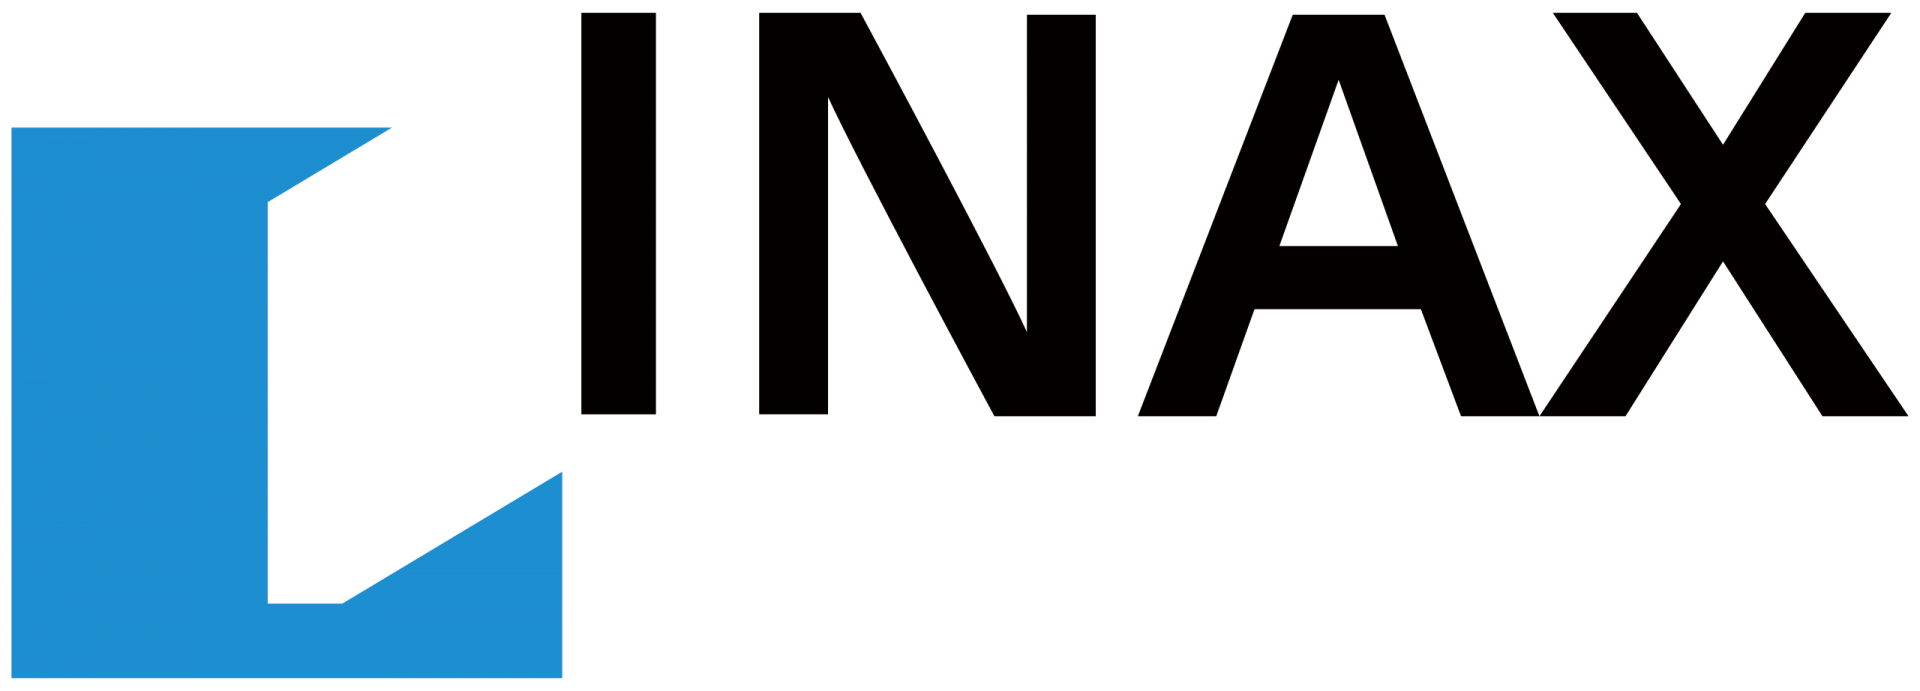 INAX là thương hiệu thiết bị vệ sinh hàng đầu Nhật Bản.